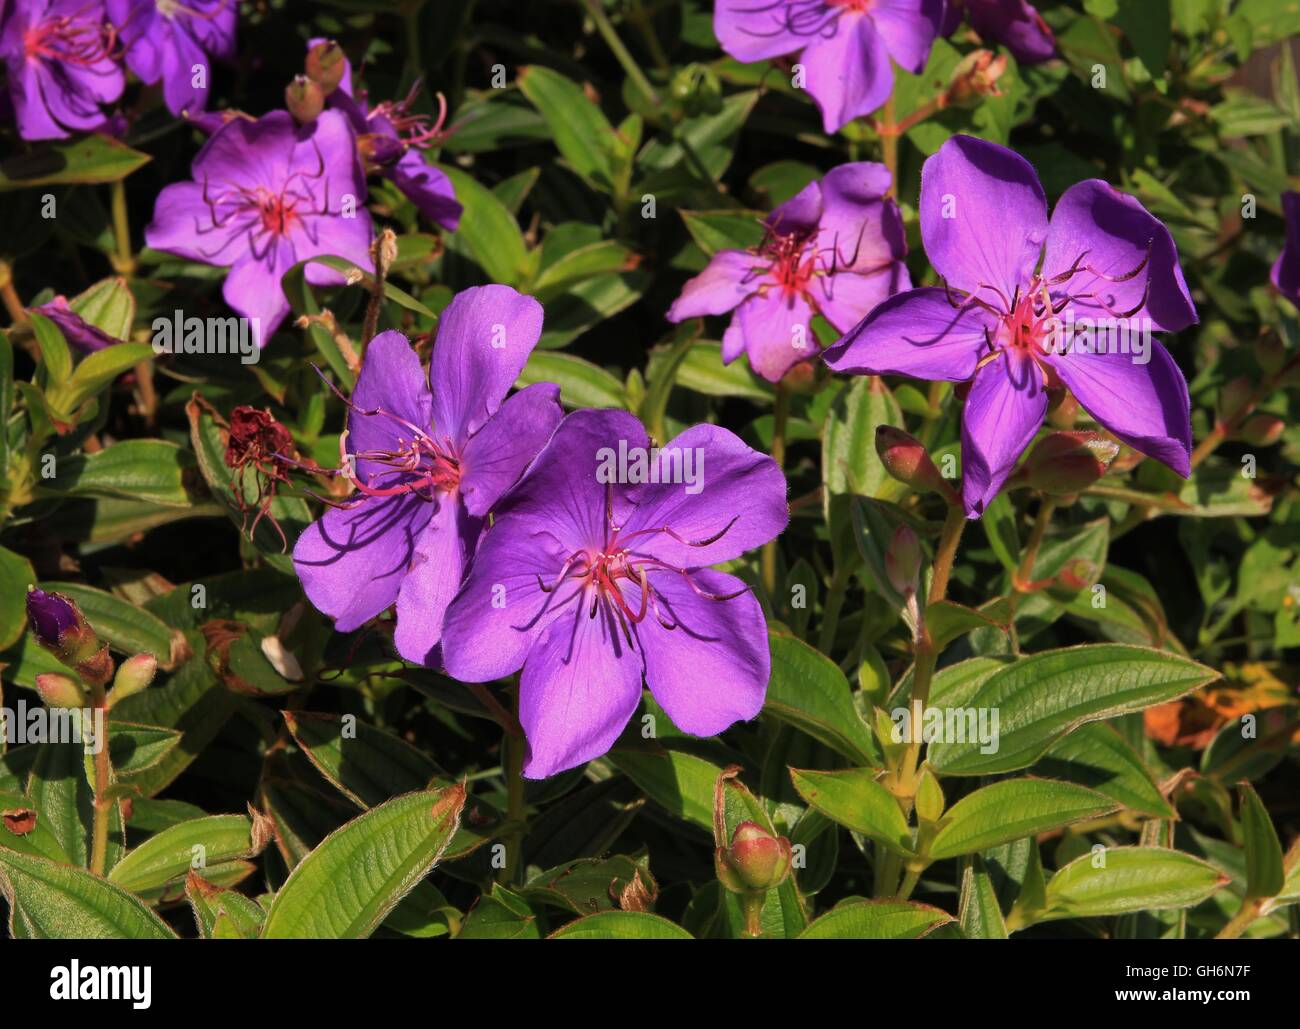 Glory bush, bush with beautiful purple flowers. Stock Photo